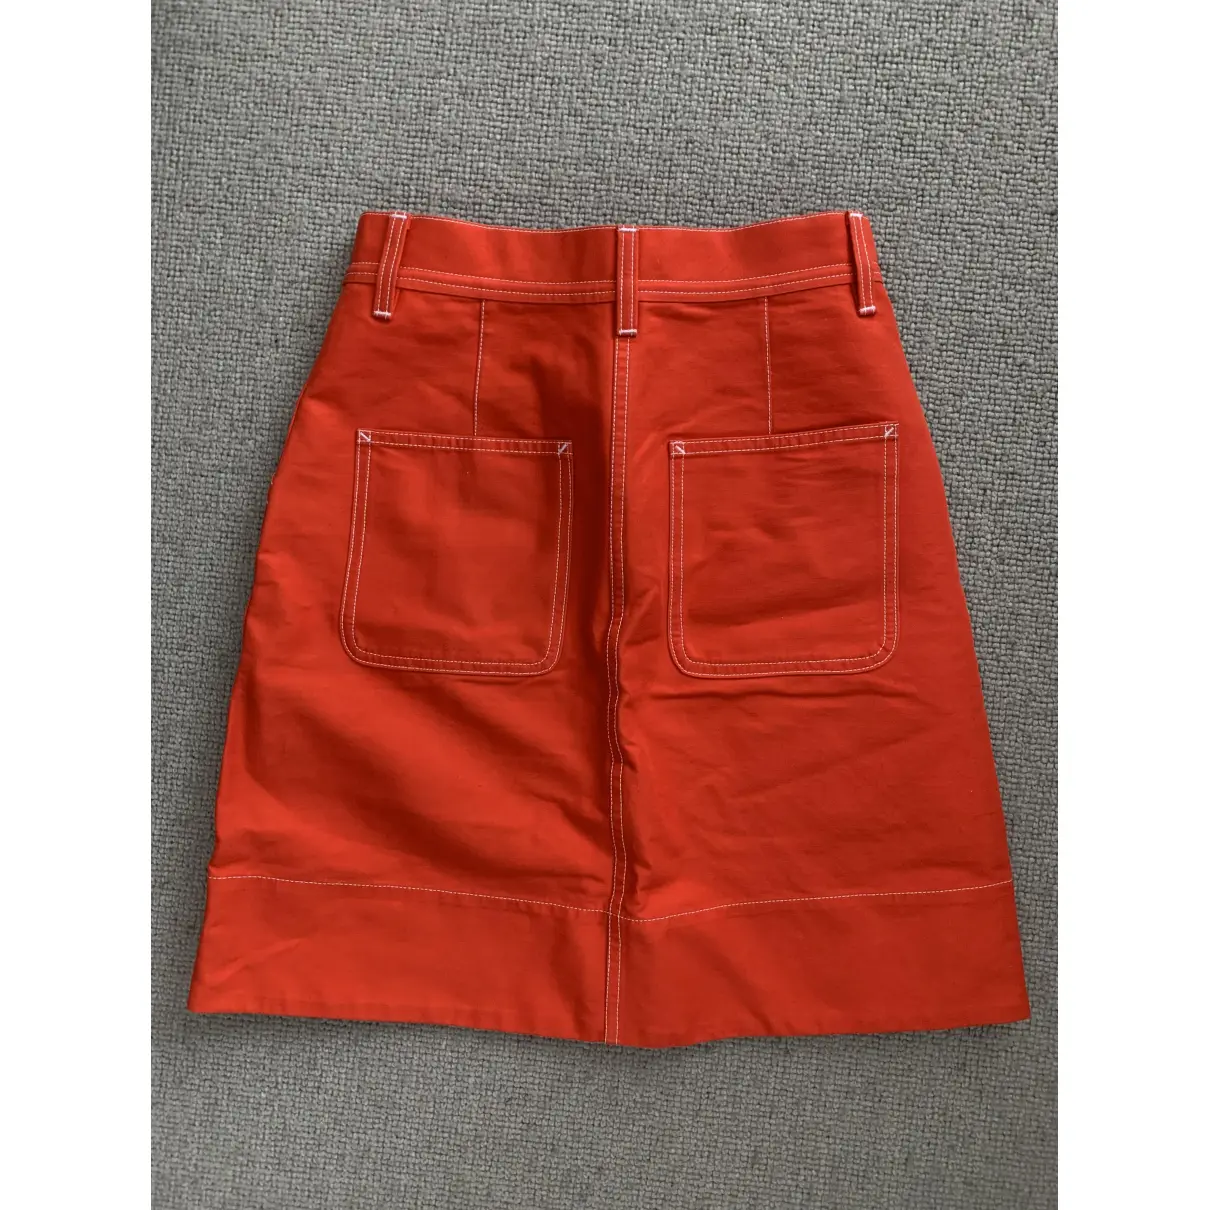 Buy Arket Mini skirt online